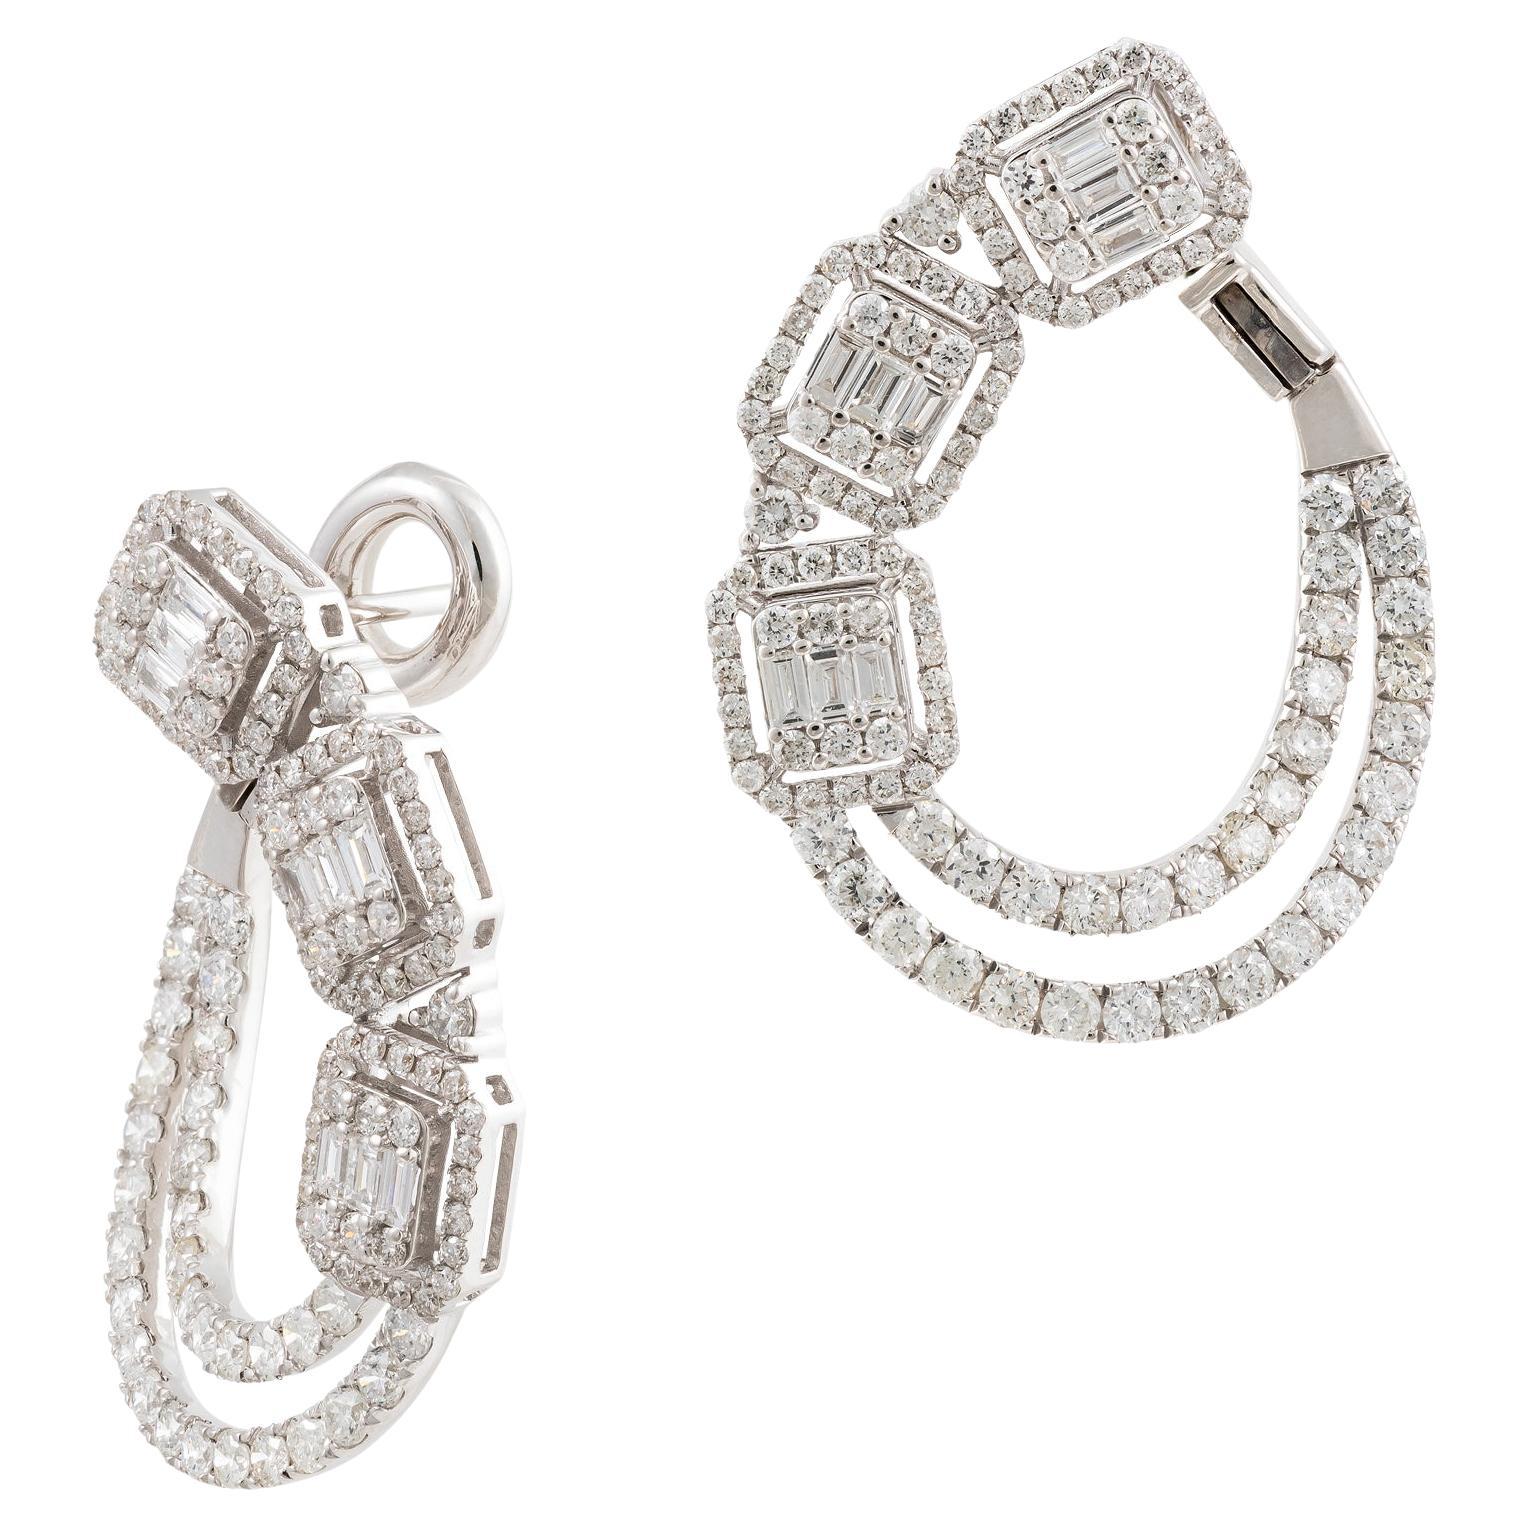 11, 500 Exquisite 18KT Gold Magnificent Triple Baguette Diamond Twist Earrings